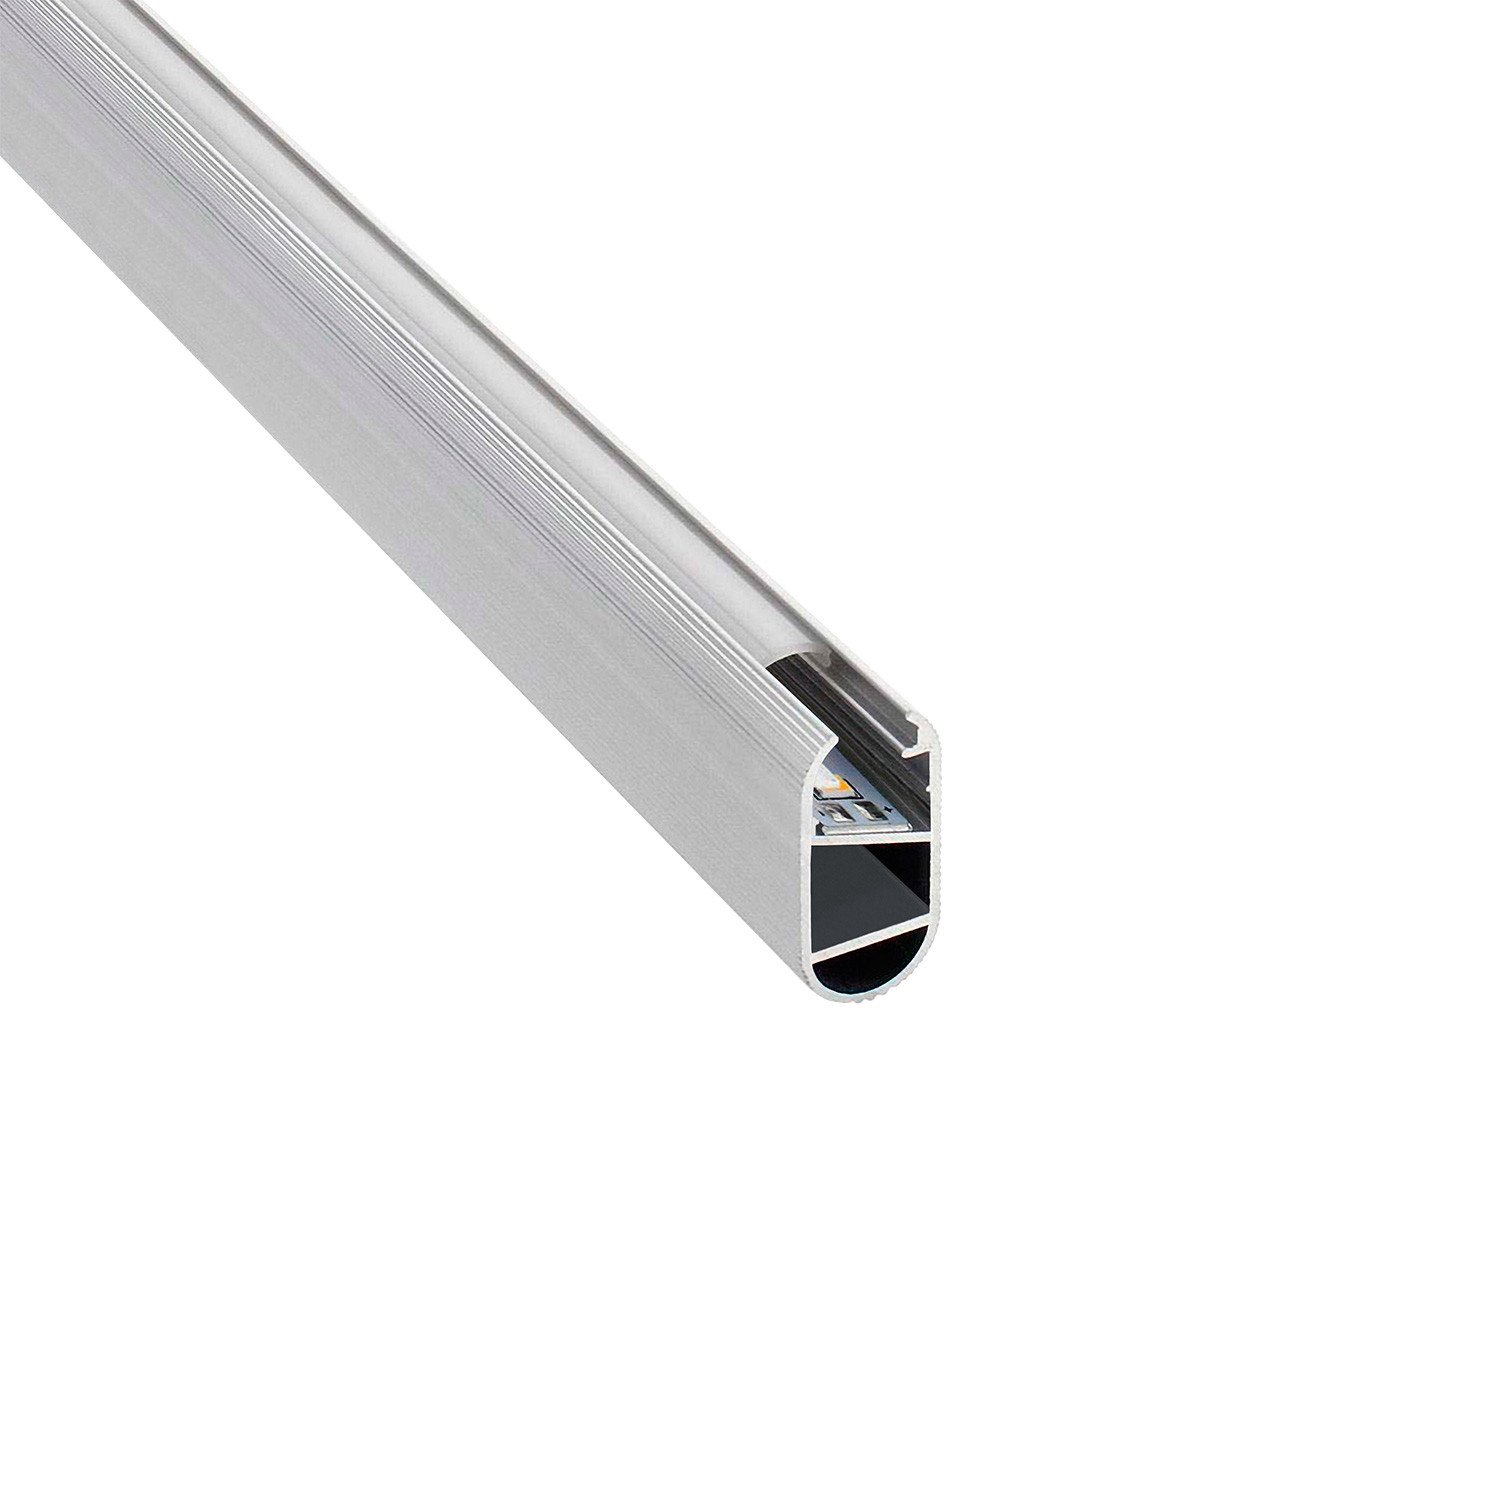 Barre de suspension en aluminium pour placard 1m pour bandes LED